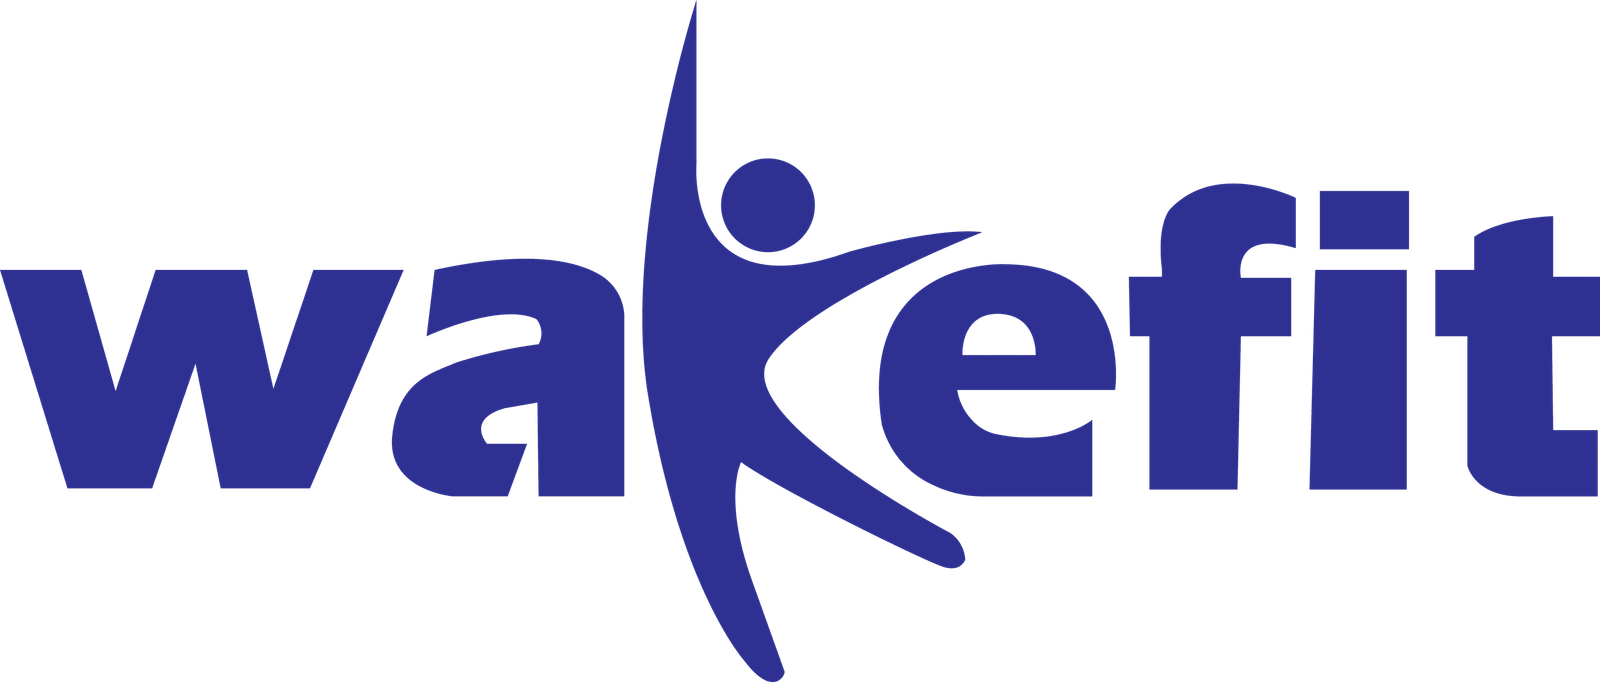 Wakefit Logo